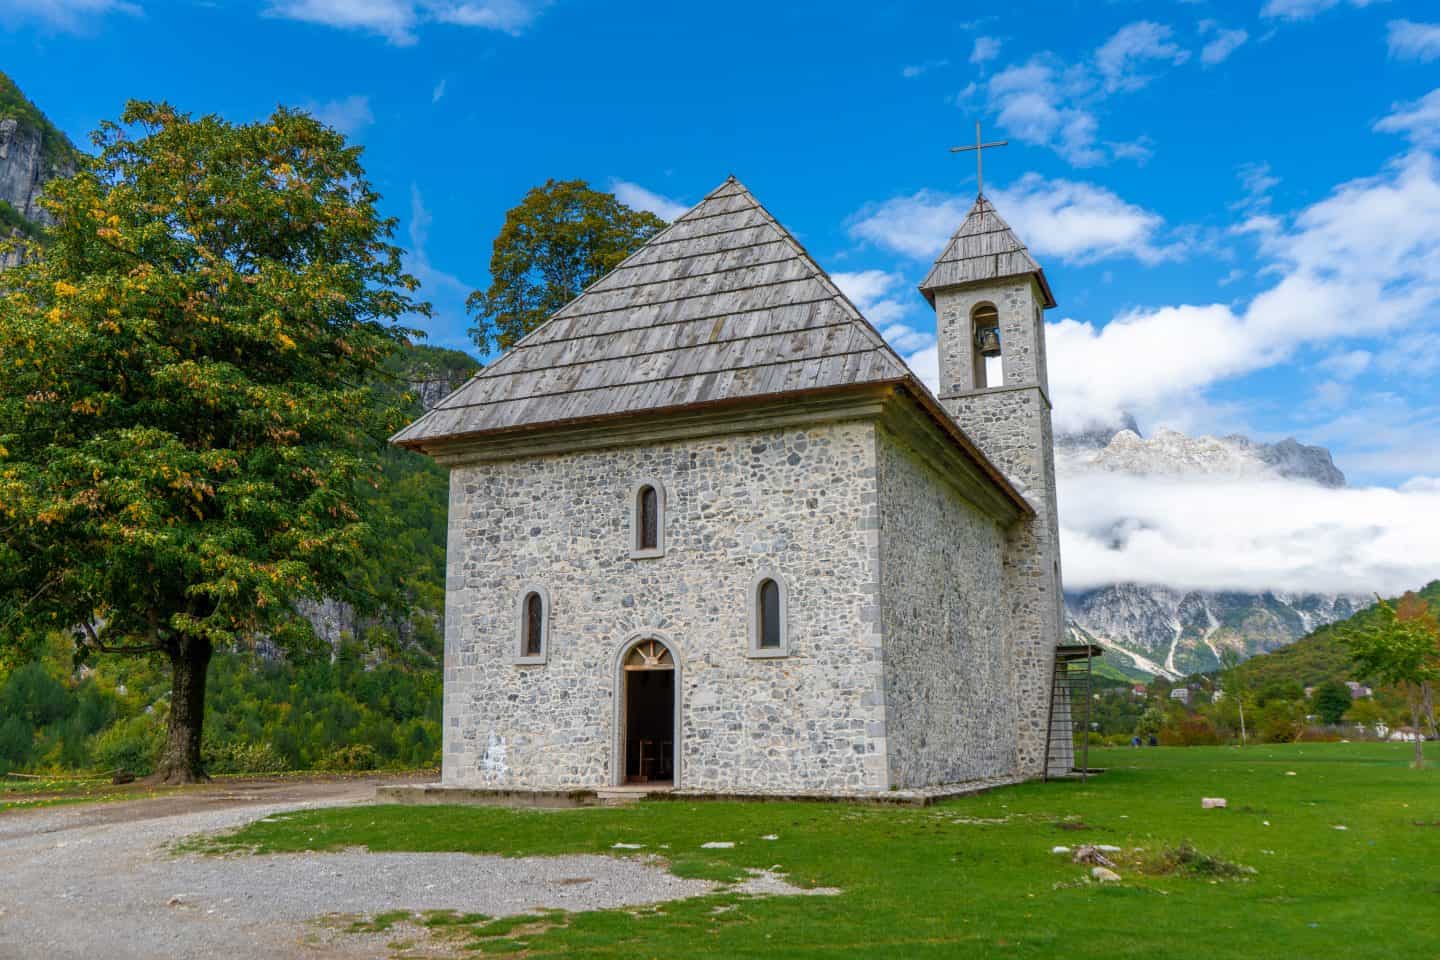 Destinos europeos baratos que debes visitar, iglesia gris con paredes de piedra, techo piramidal y torre única junto a árboles verdes con montañas empañadas en la distancia